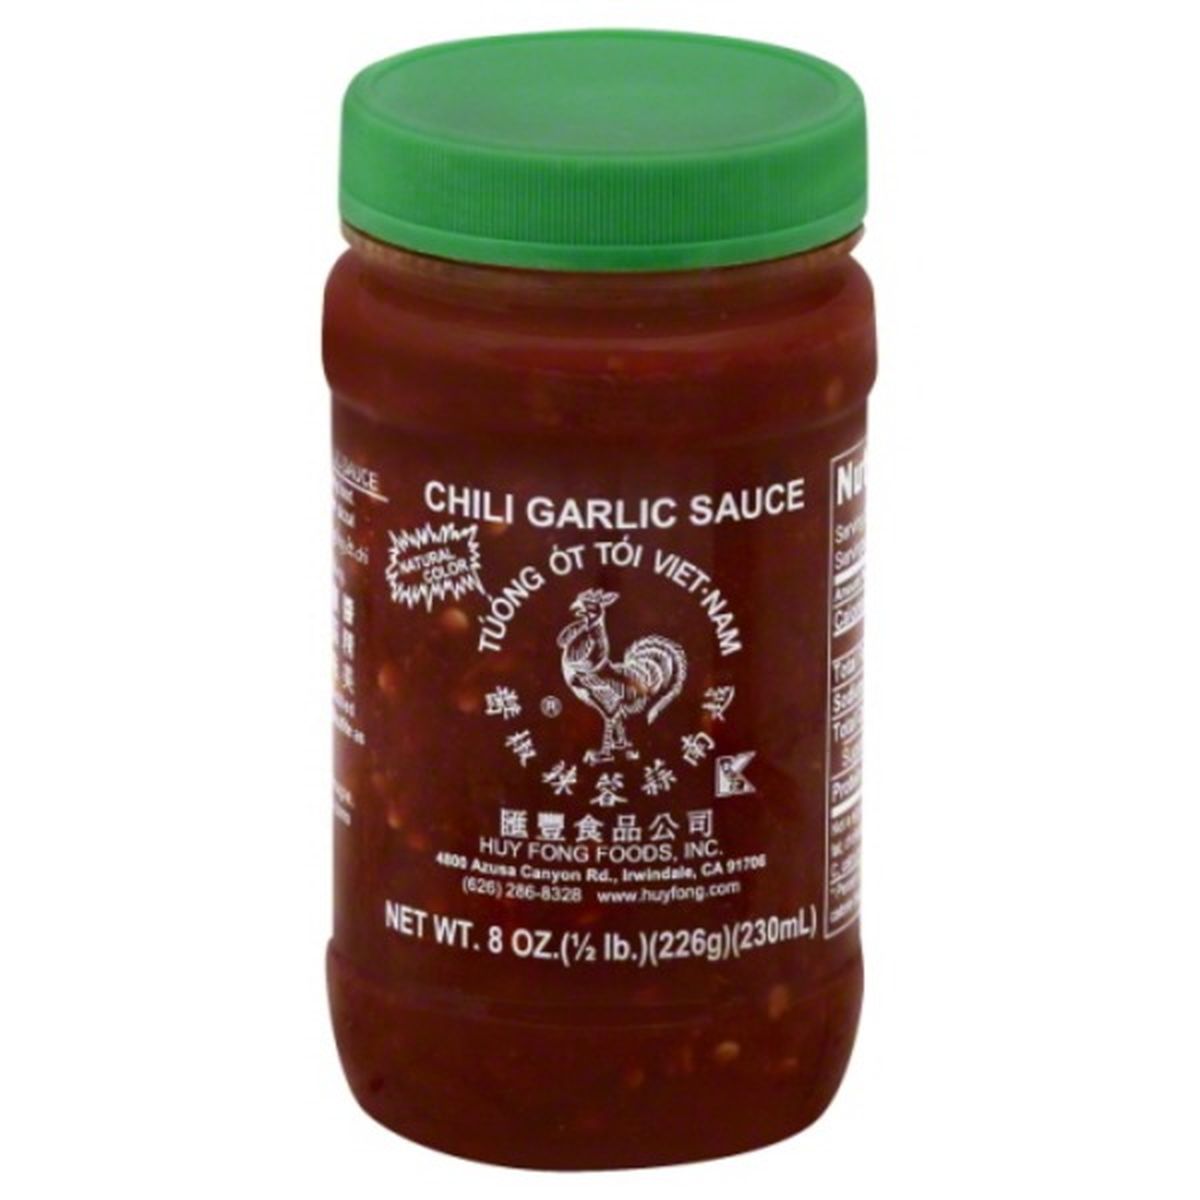 Calories in Huy Fong Chili Garlic Sauce